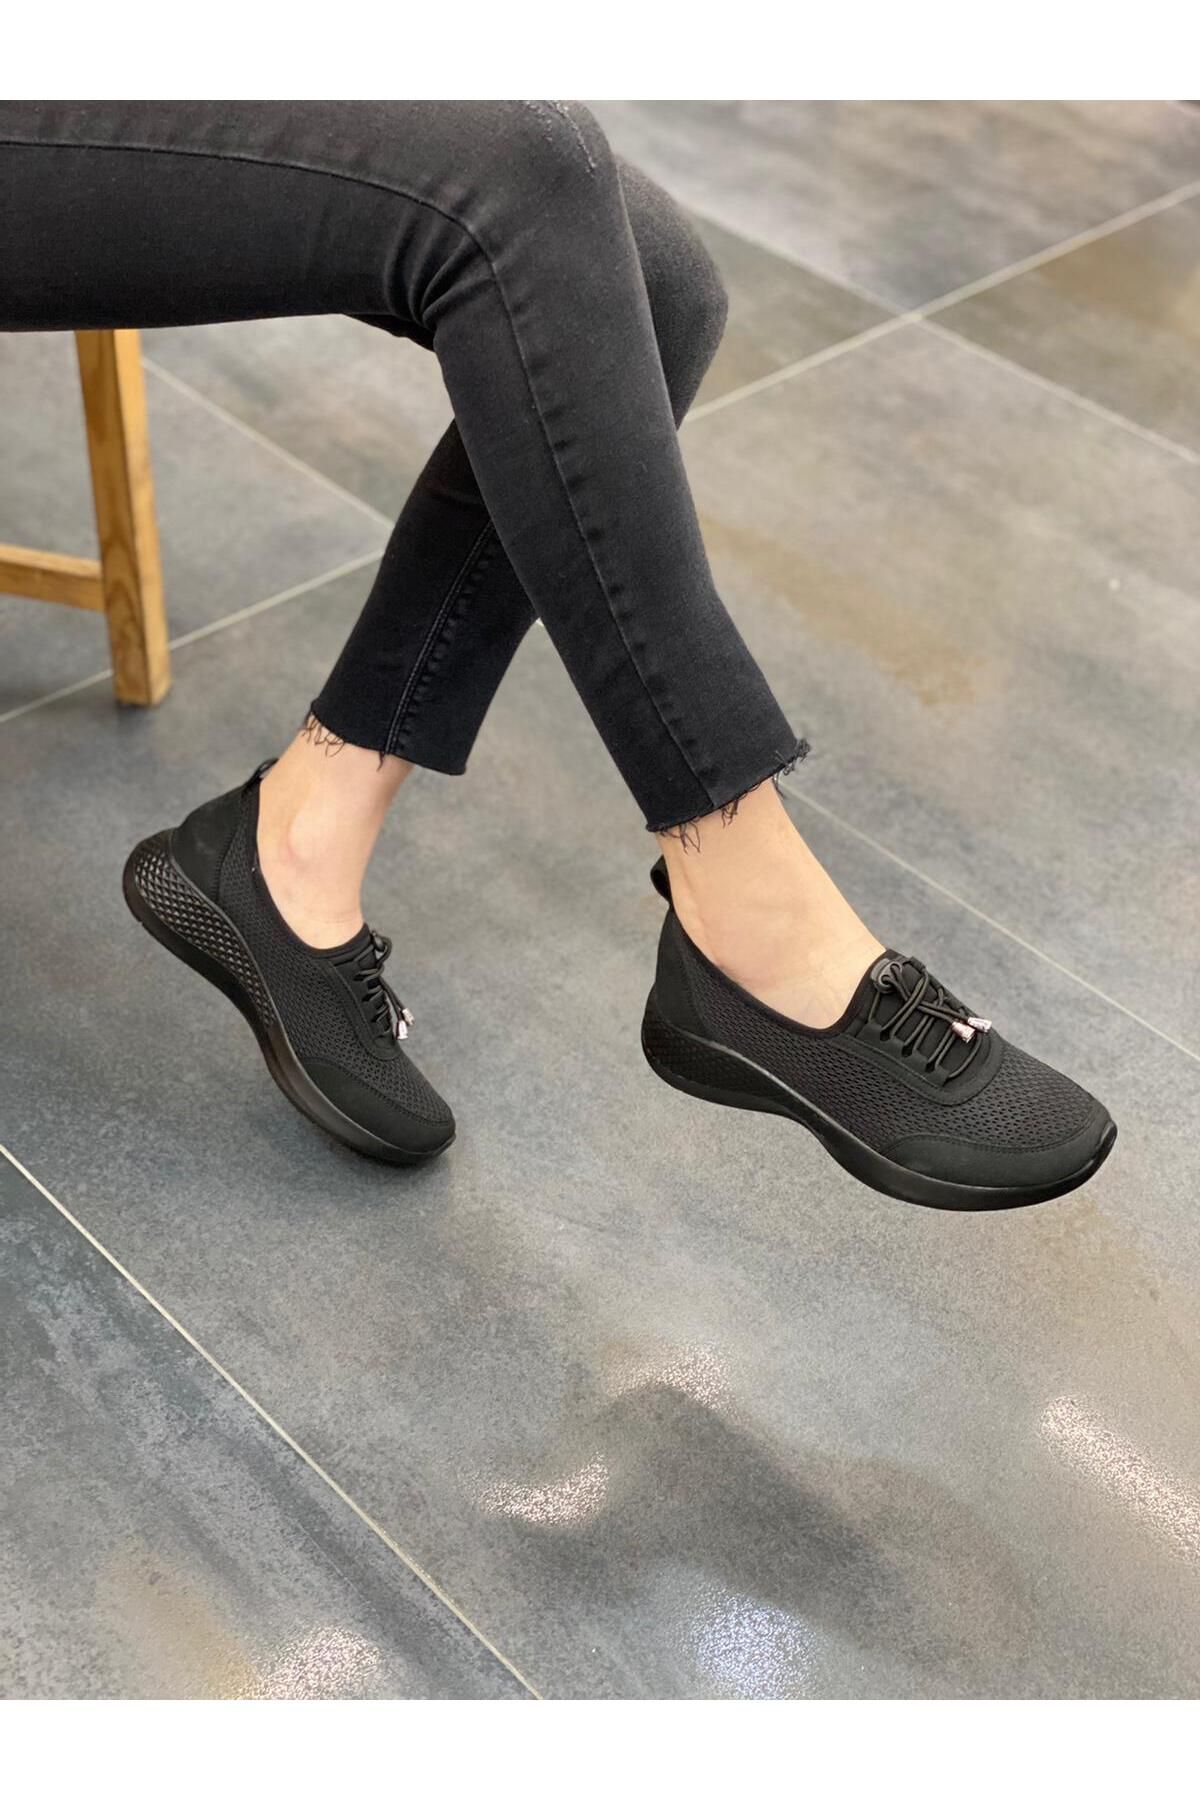 DİVA Diva Siyah Triko Taşlı Günlük Kadın Ayakkabı